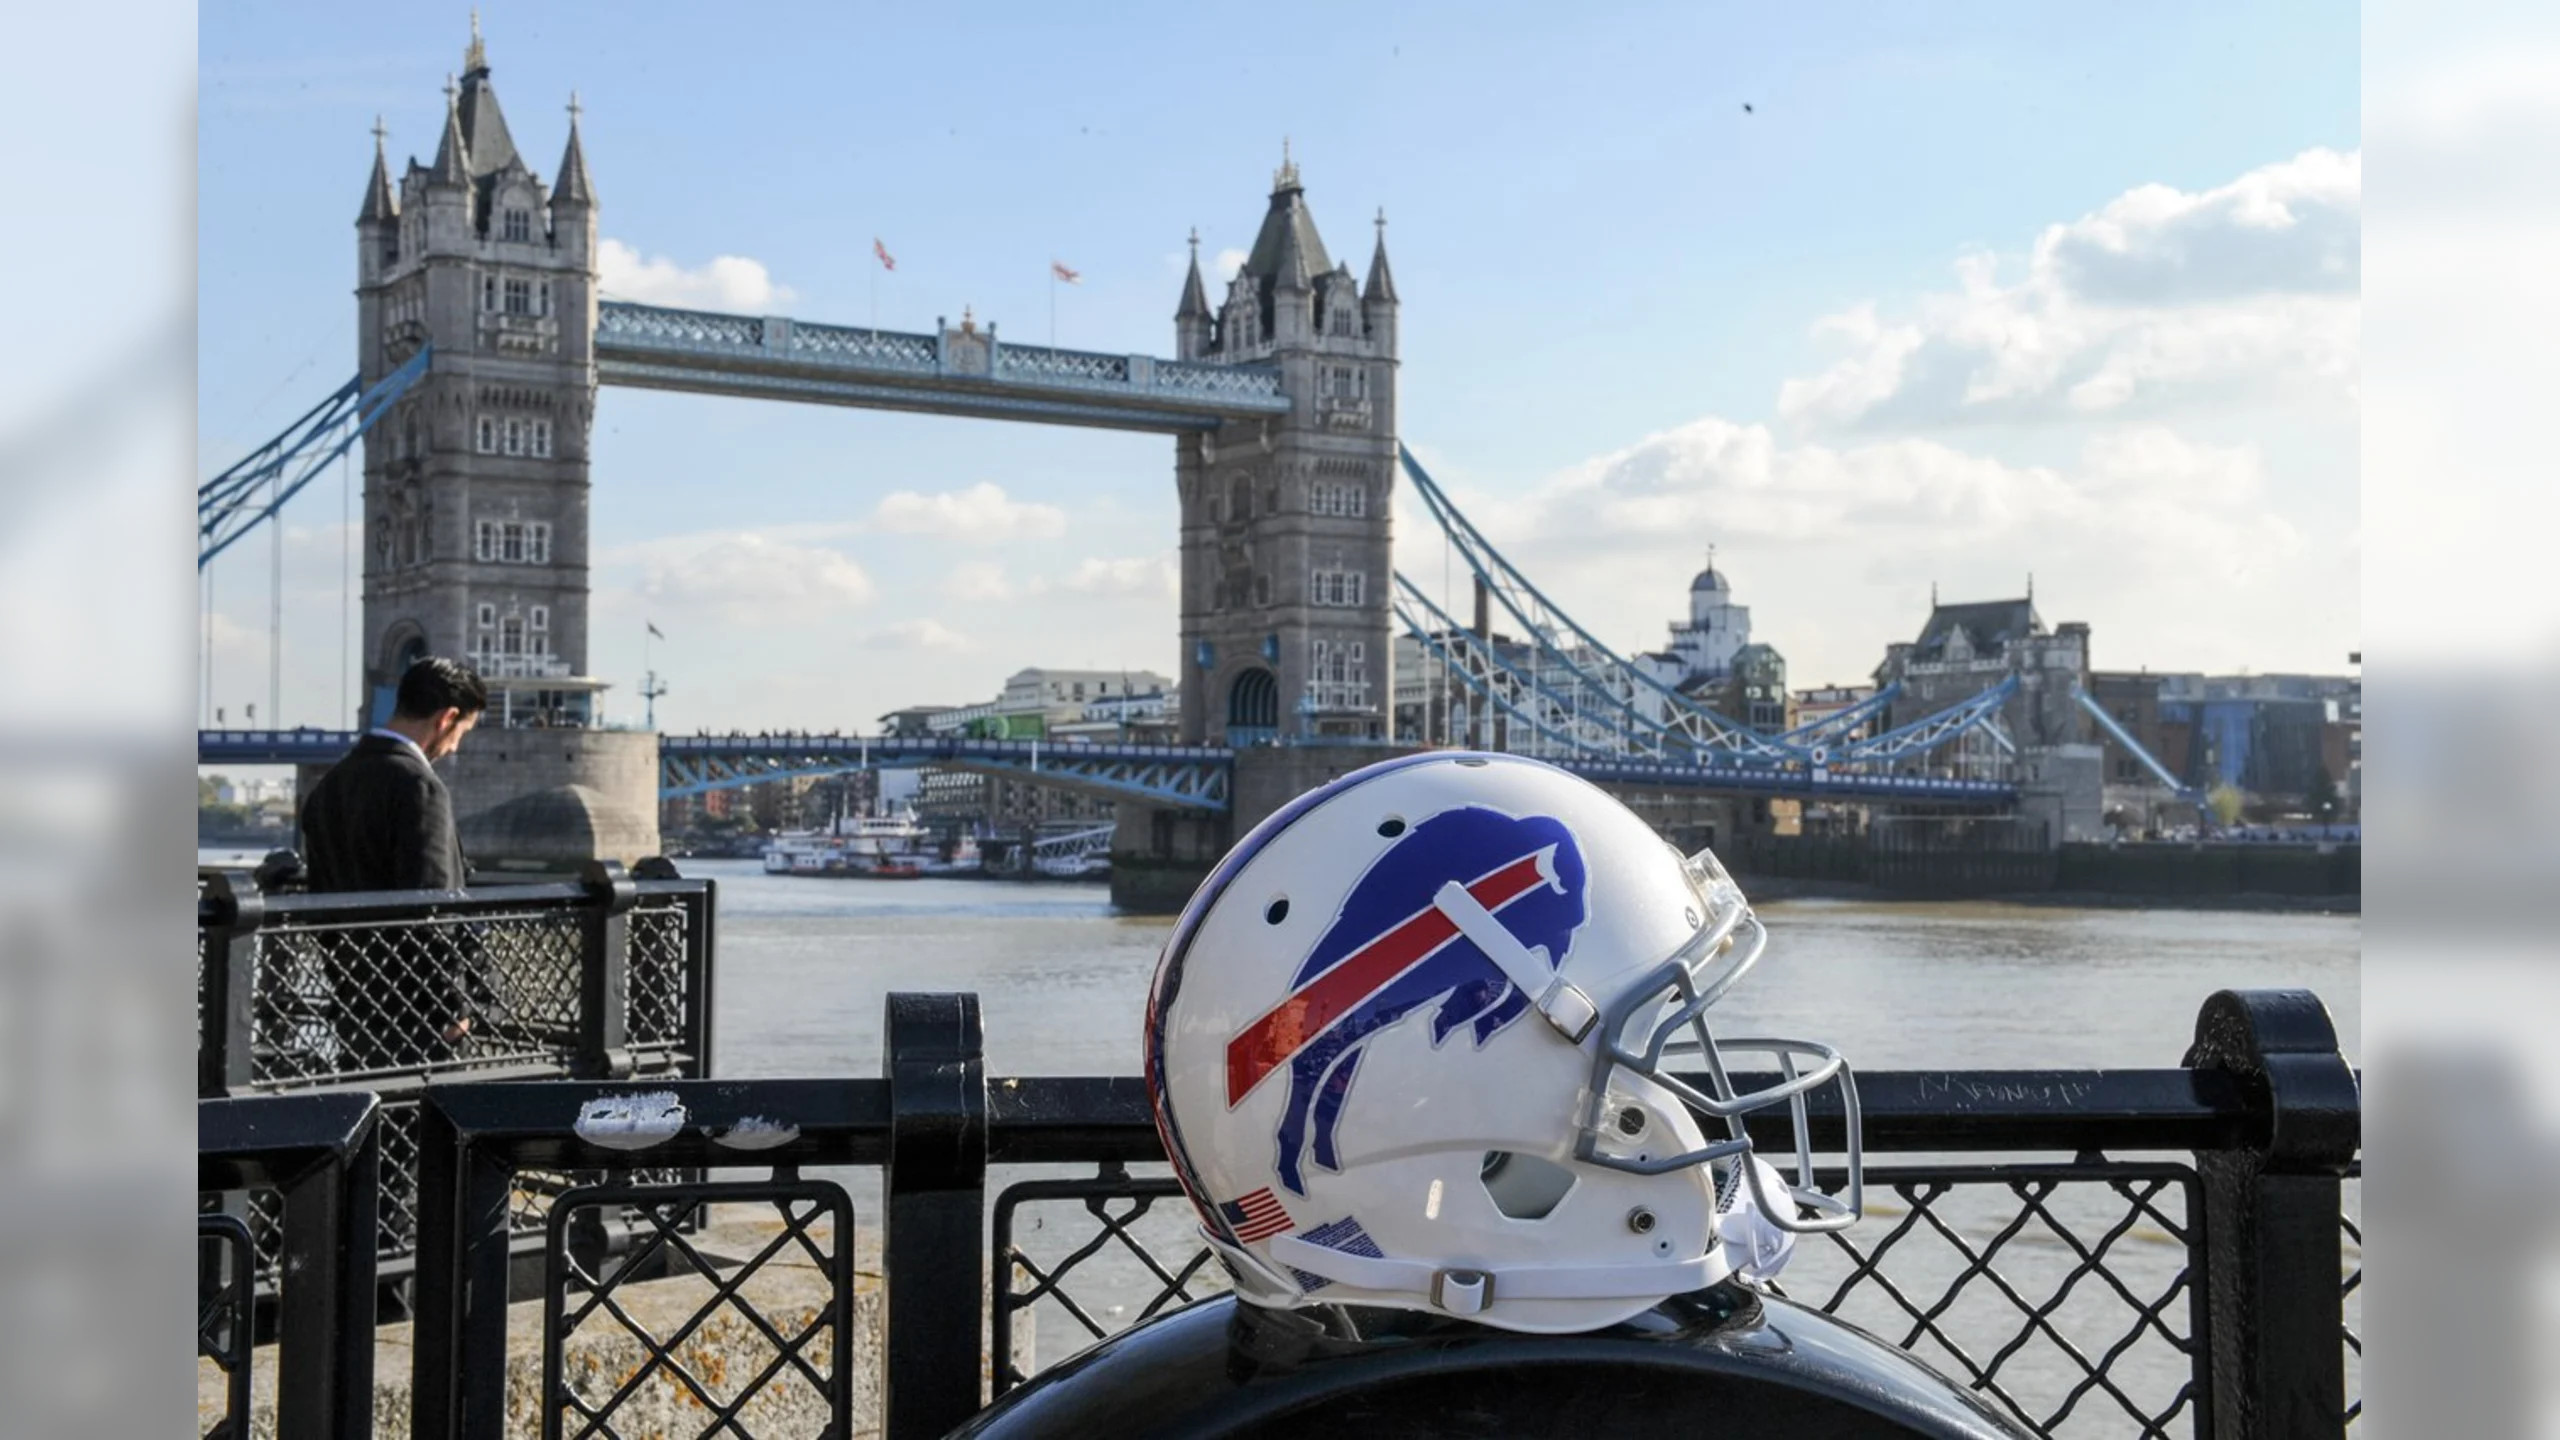 A Bills helmet in front of Tower Bridge in London.